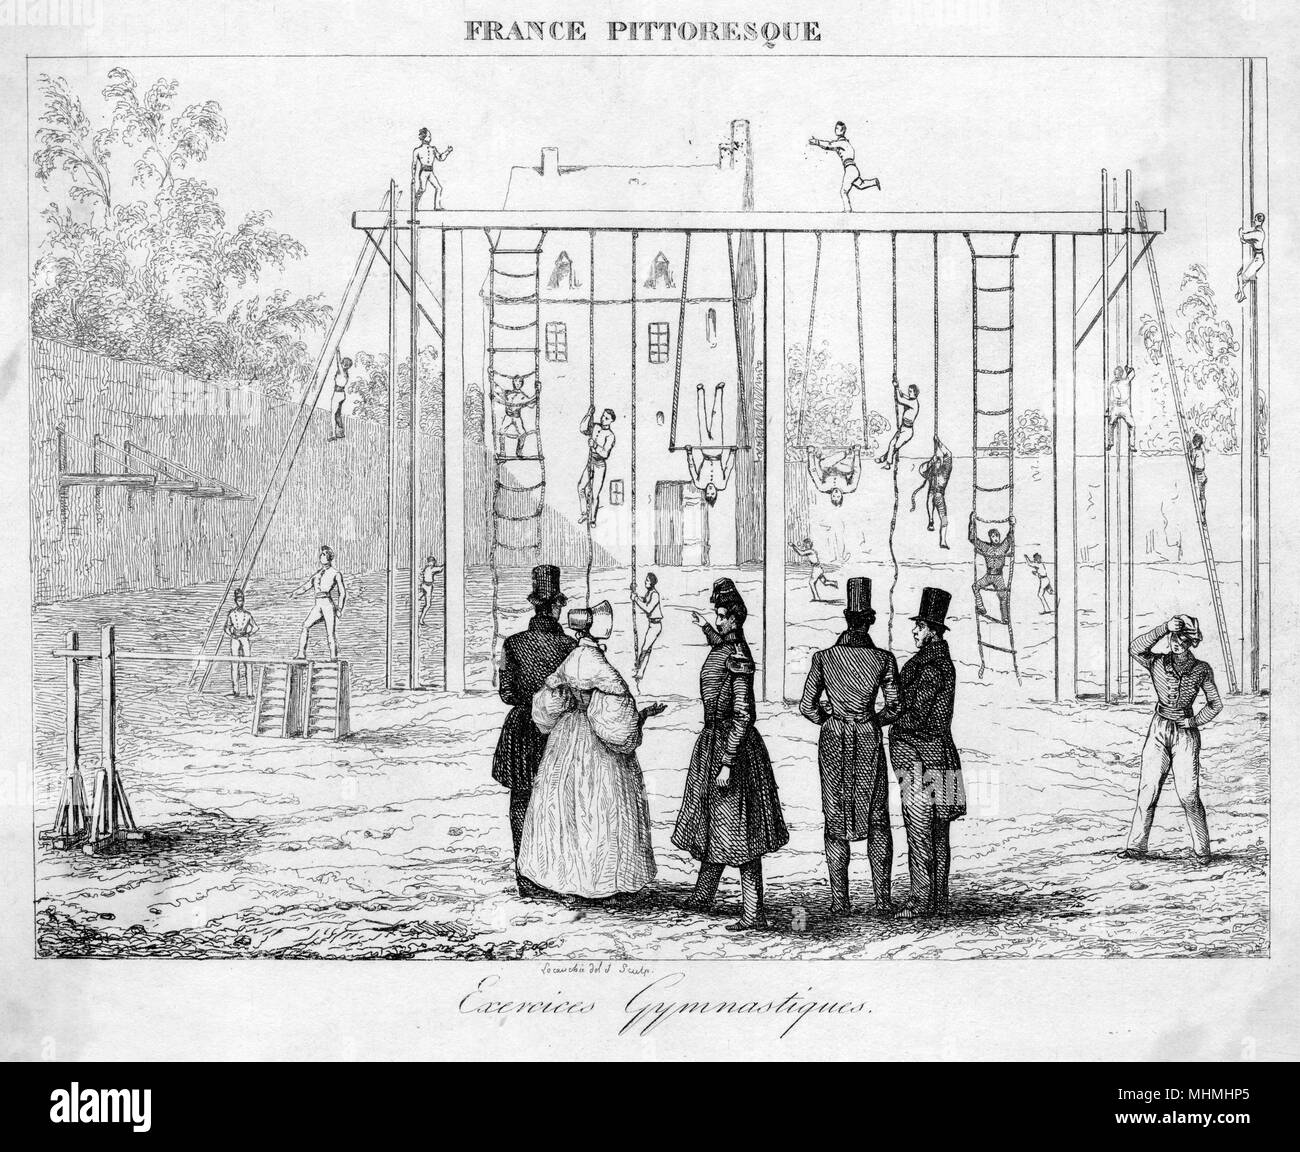 Los jóvenes franceses que participan en ejercicios de gimnasia sobre cuerdas, escaleras y bares Fecha: 1830 Foto de stock